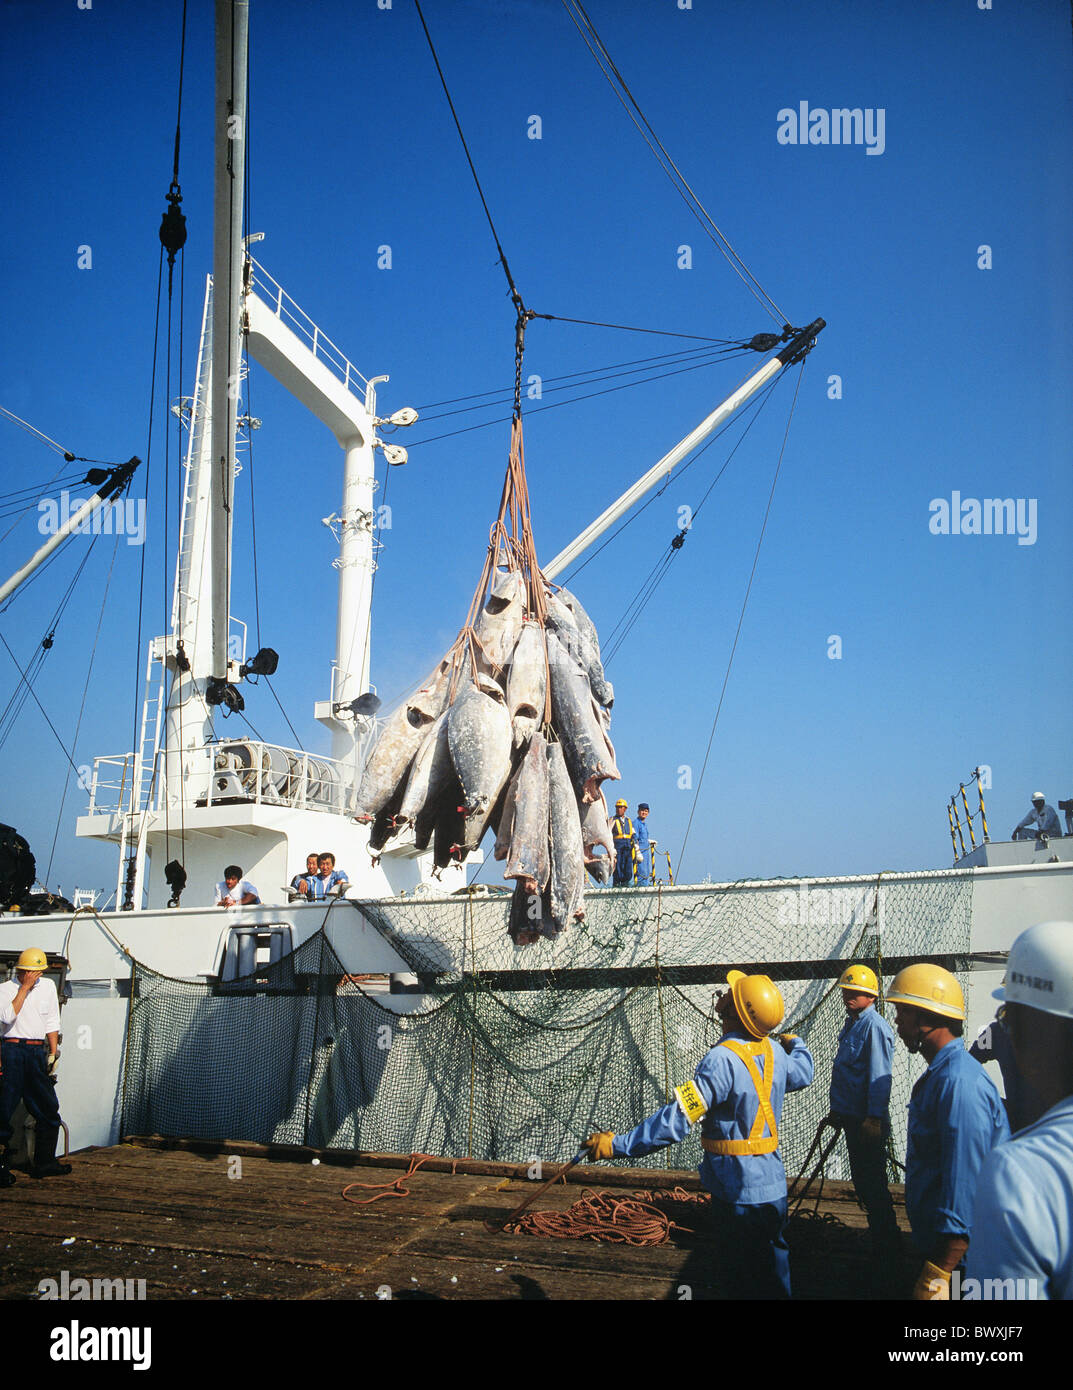 Pêche La pêche de capture travailleur Japon Asie navire casques de protection Shimuzu du thon Banque D'Images